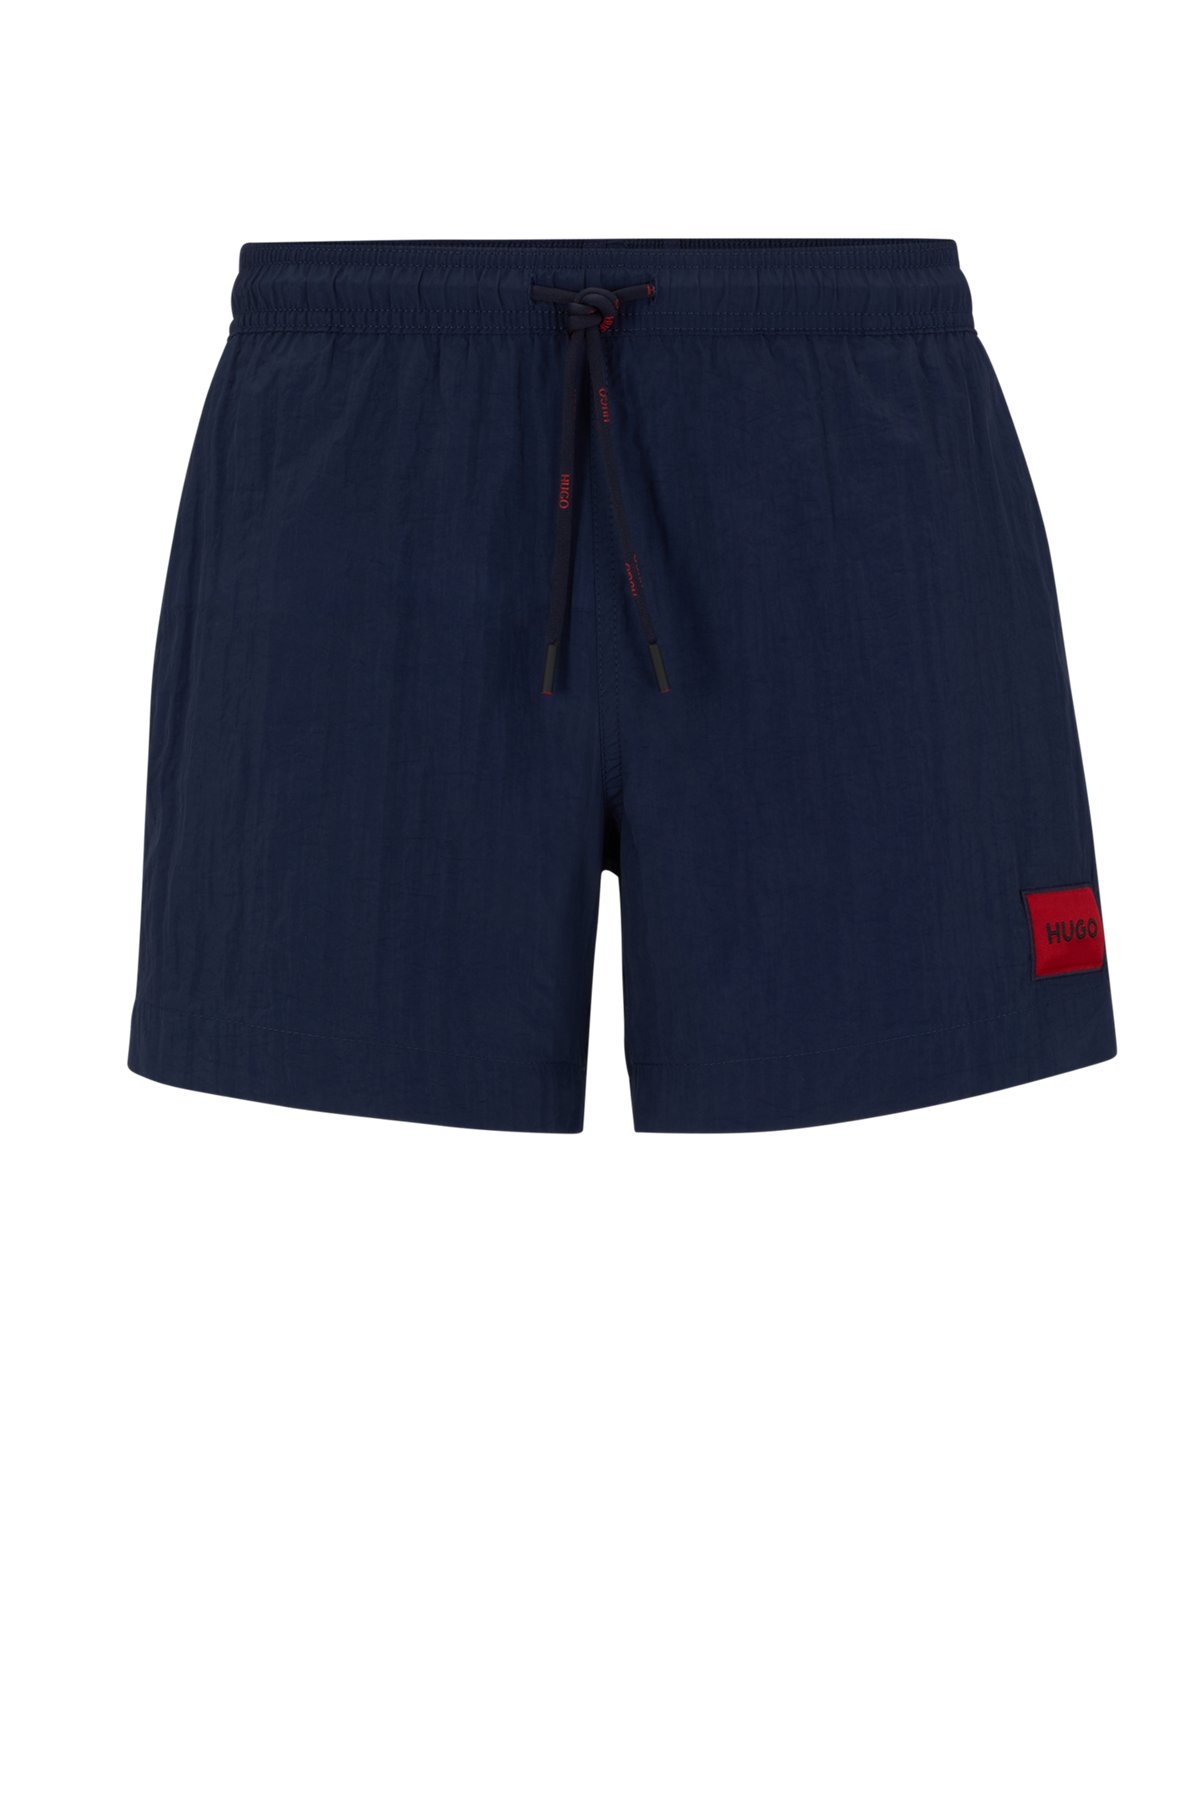 Bañador tipo shorts de secado rápido con etiqueta de logo roja, Azul oscuro